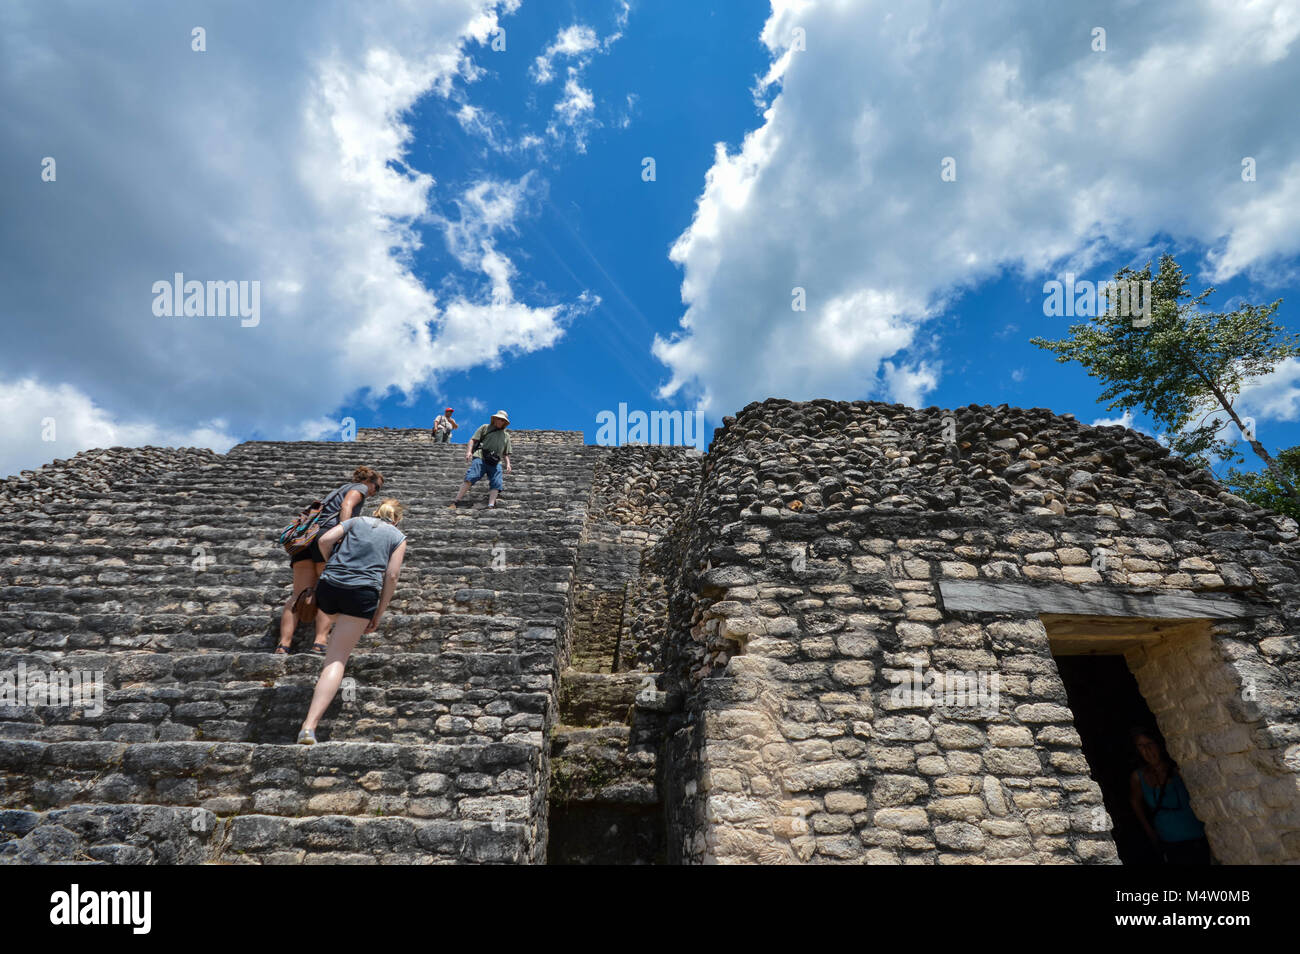 Caracol, Cayo District, Belize - März 22, 2015: Touristen steigen Sie die Treppen von Caana Pyramide Caracol archäologische Stätte der Maya Zivilisation, Benachrichtigen Stockfoto